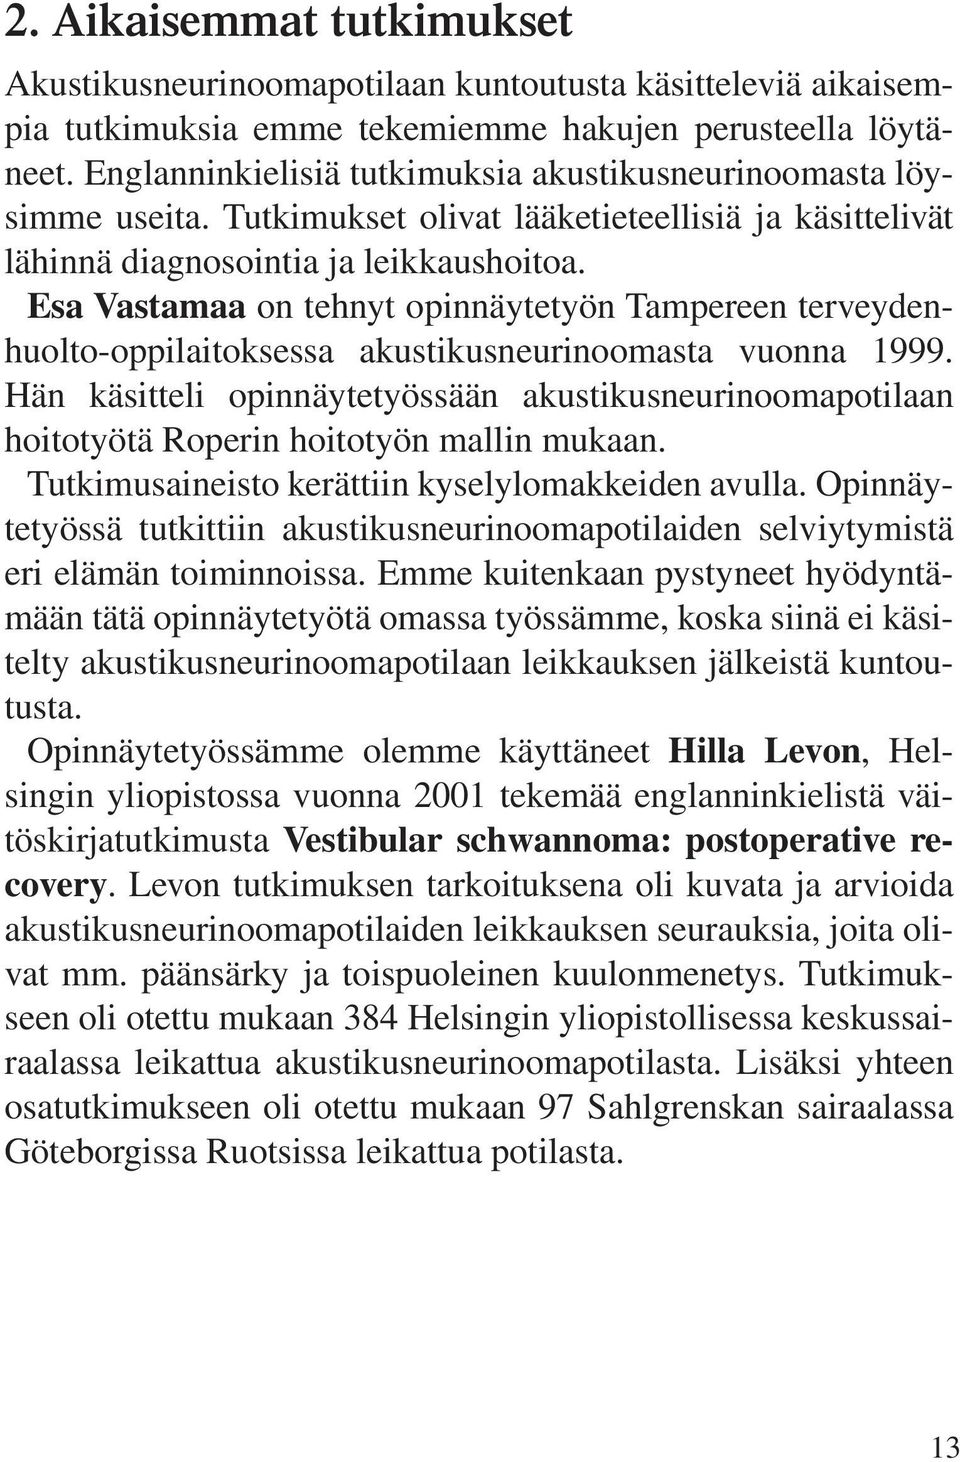 Esa Vastamaa on tehnyt opinnäytetyön Tampereen terveydenhuolto-oppilaitoksessa akustikusneurinoomasta vuonna 1999.